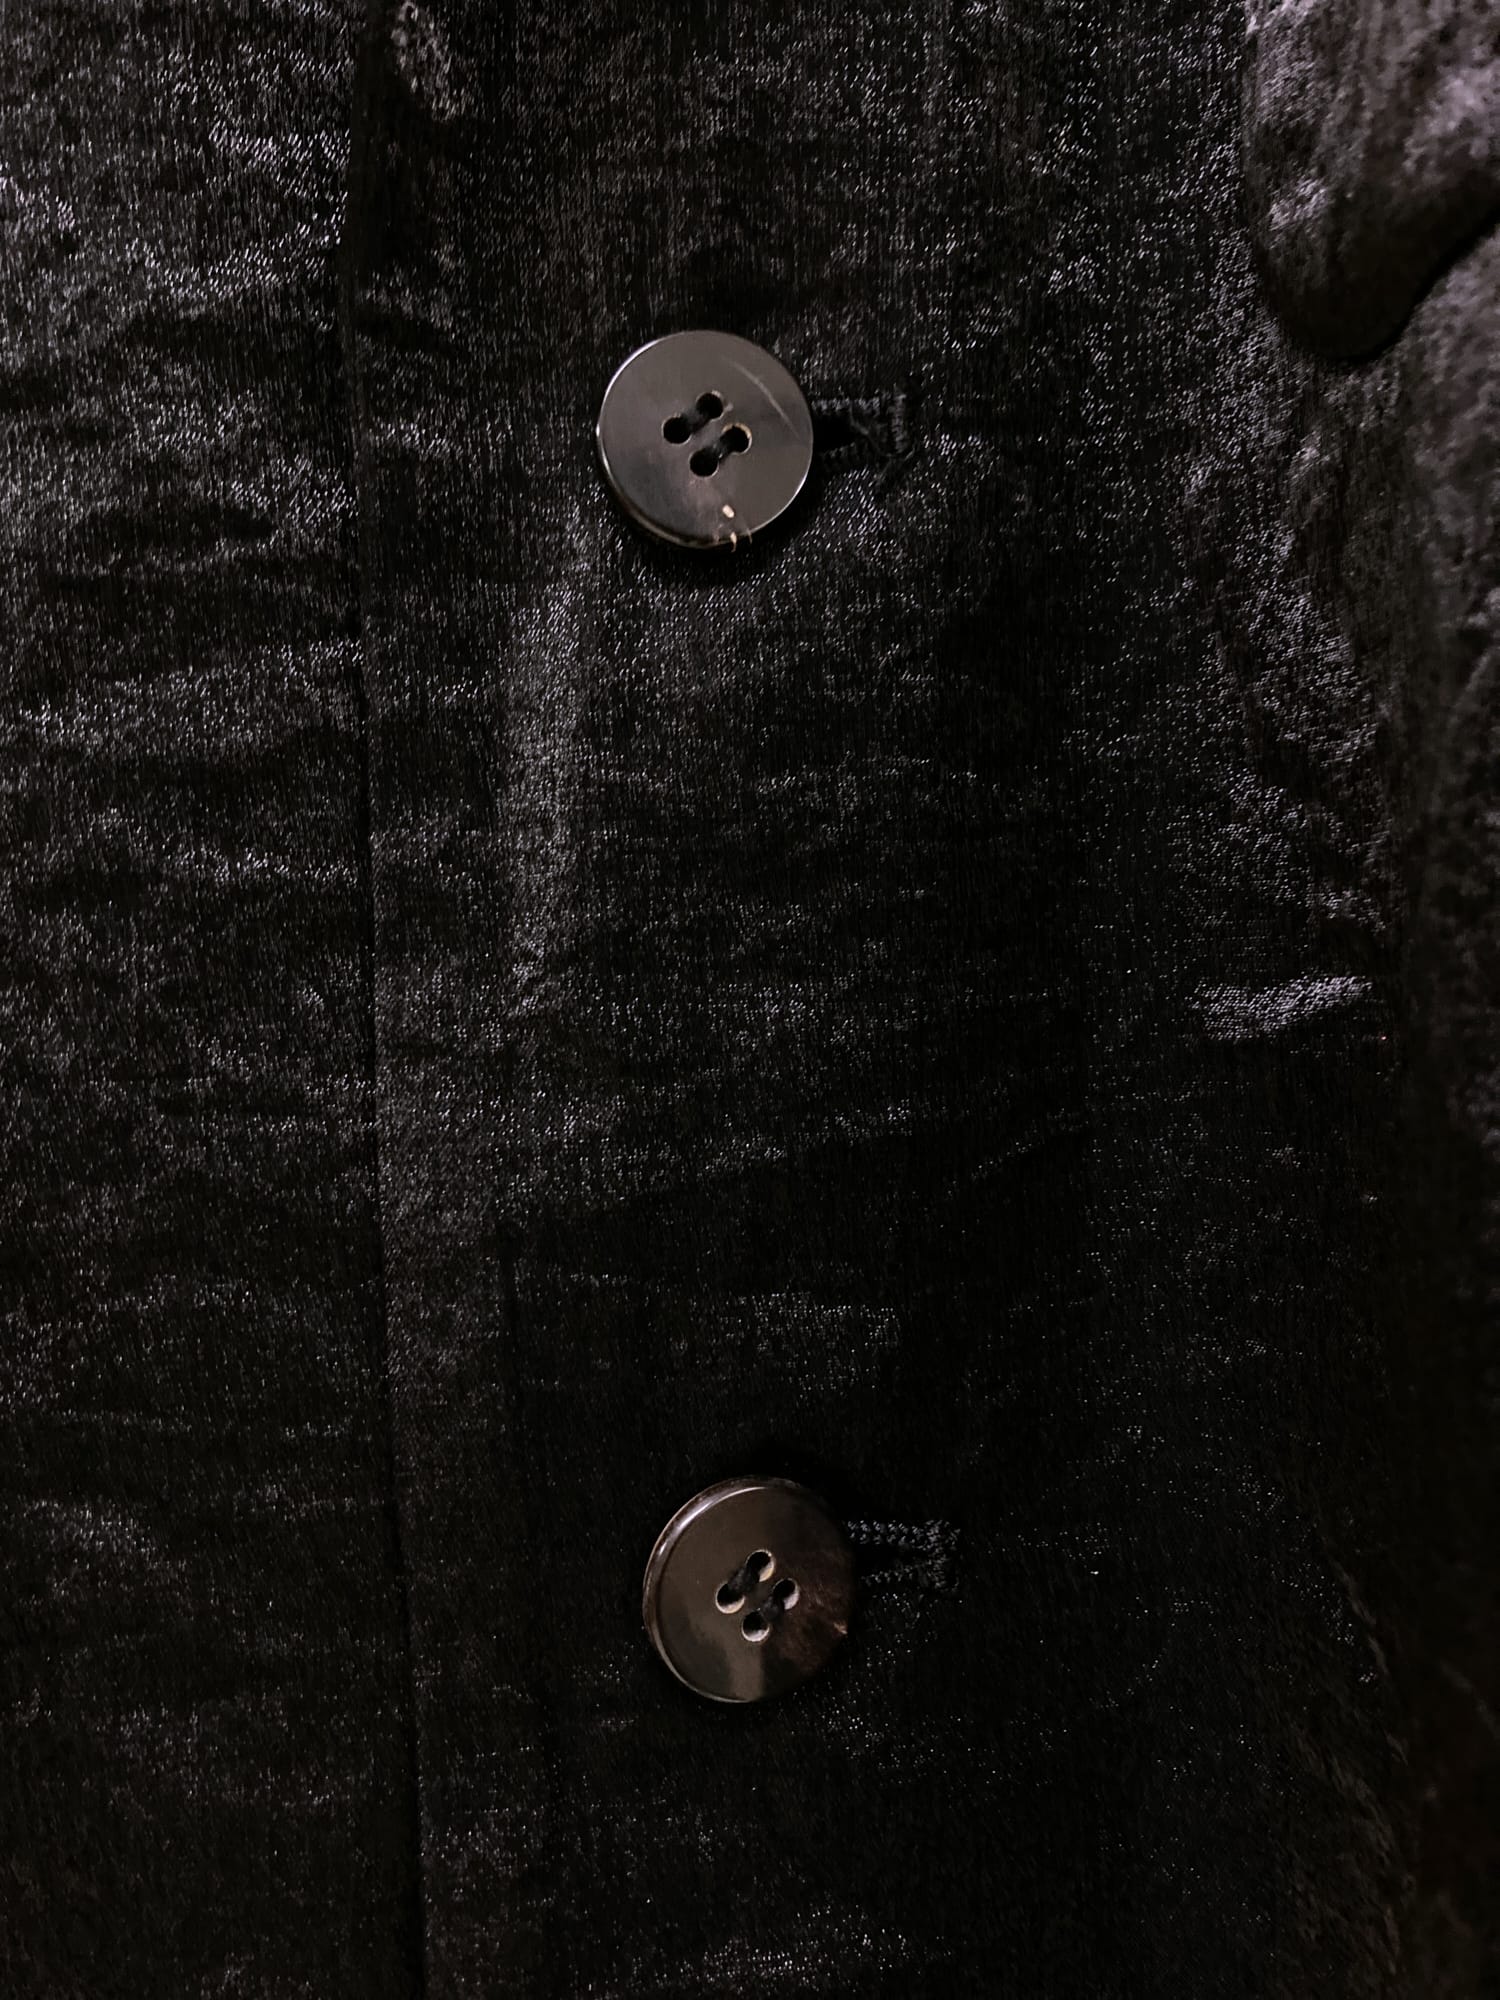 Issey Miyake Permanente shiny black three button blazer - M